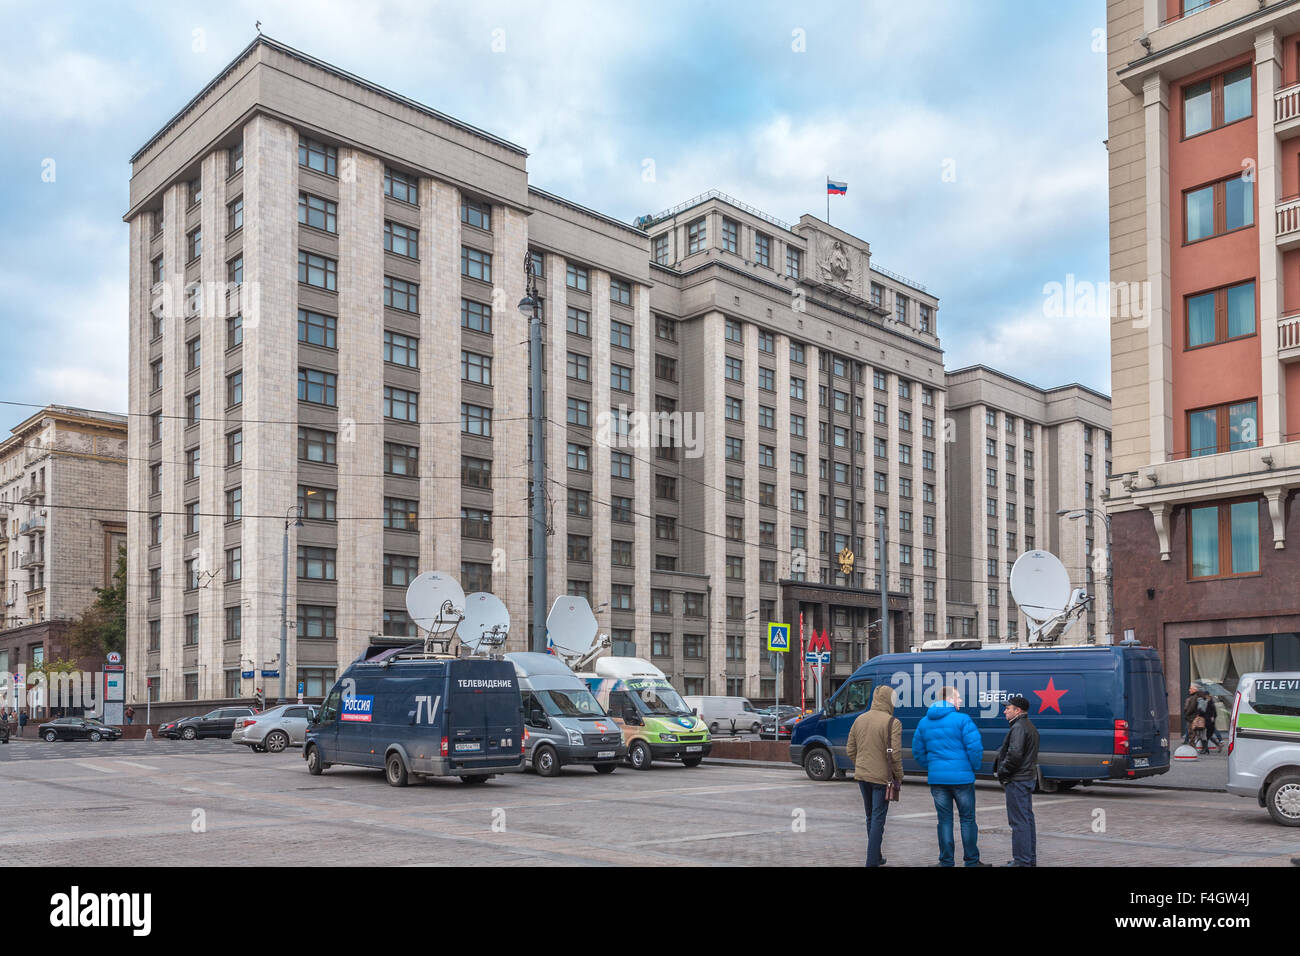 Moskau, Russland - 14. Oktober 2015: Eingang zum Zustand Duma der föderalen Versammlung des russischen (Parlament). Schauen Sie durch Okhotny r Stockfoto